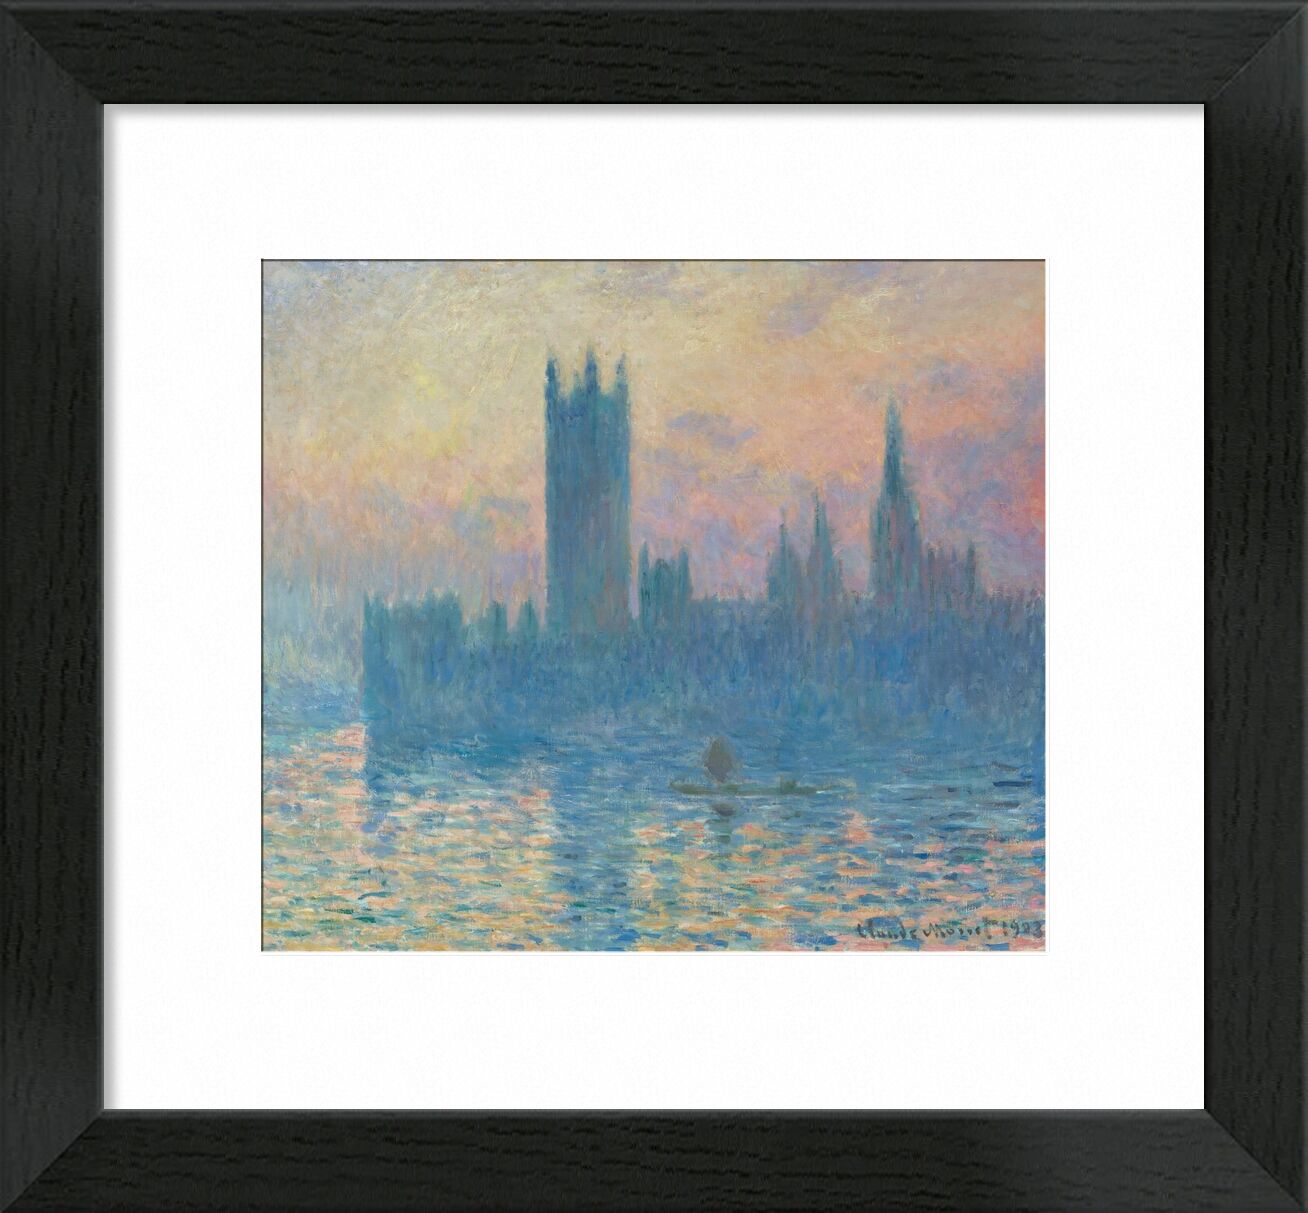 Houses of Parliament, London 1905 von Bildende Kunst, Prodi Art, Fluss, London, thames, Kapital, Parlament, Parlament von London, CLAUDE MONE